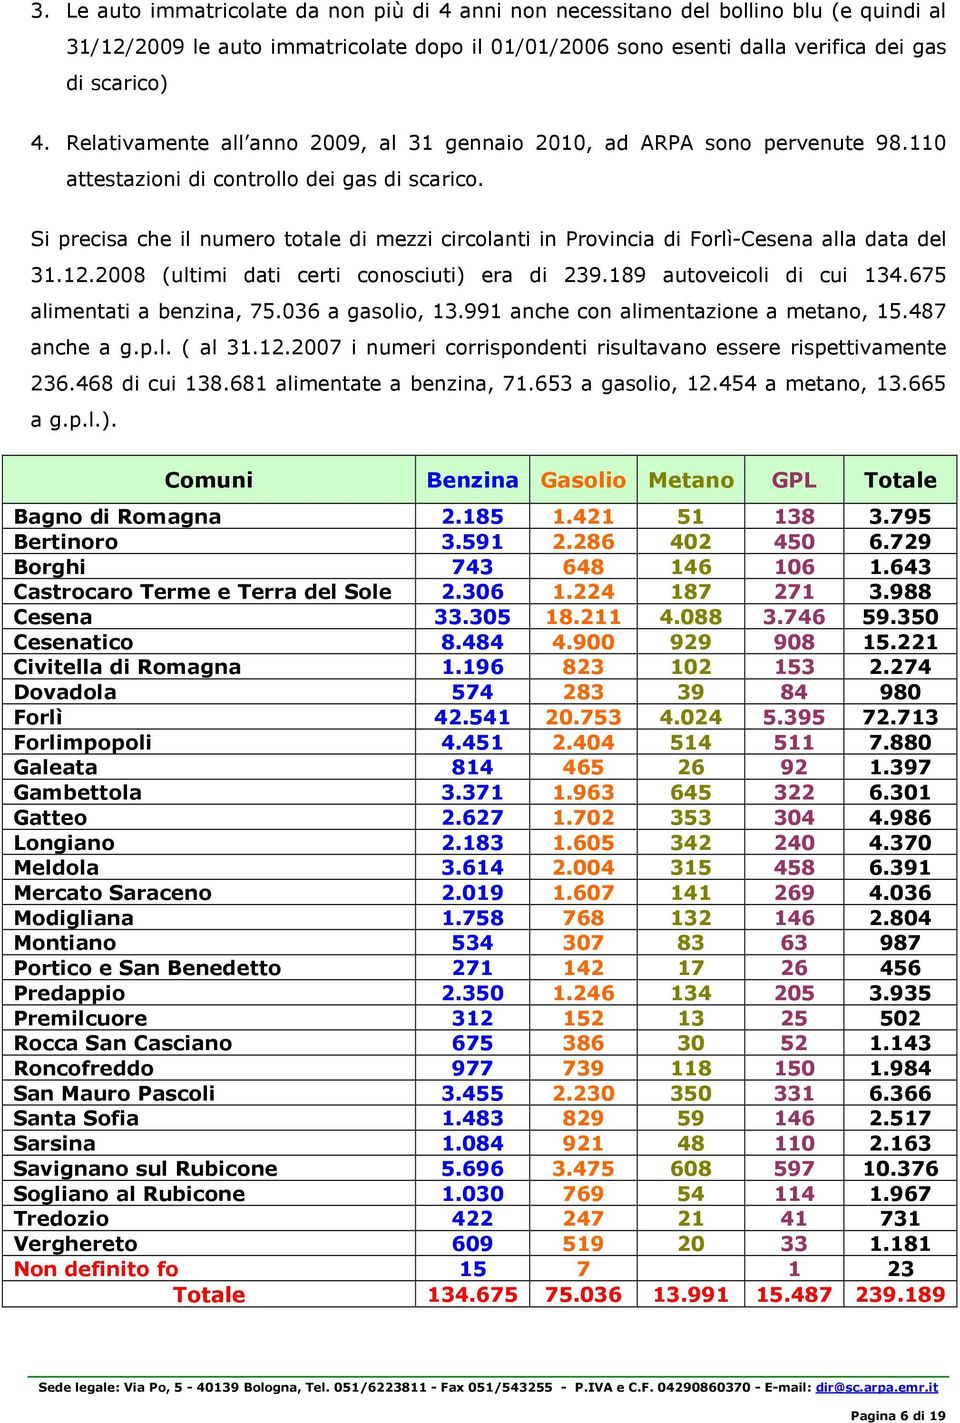 Si precisa che il numero totale di mezzi circolanti in Provincia di Forlì-Cesena alla data del 31.12.2008 (ultimi dati certi conosciuti) era di 239.189 autoveicoli di cui 134.